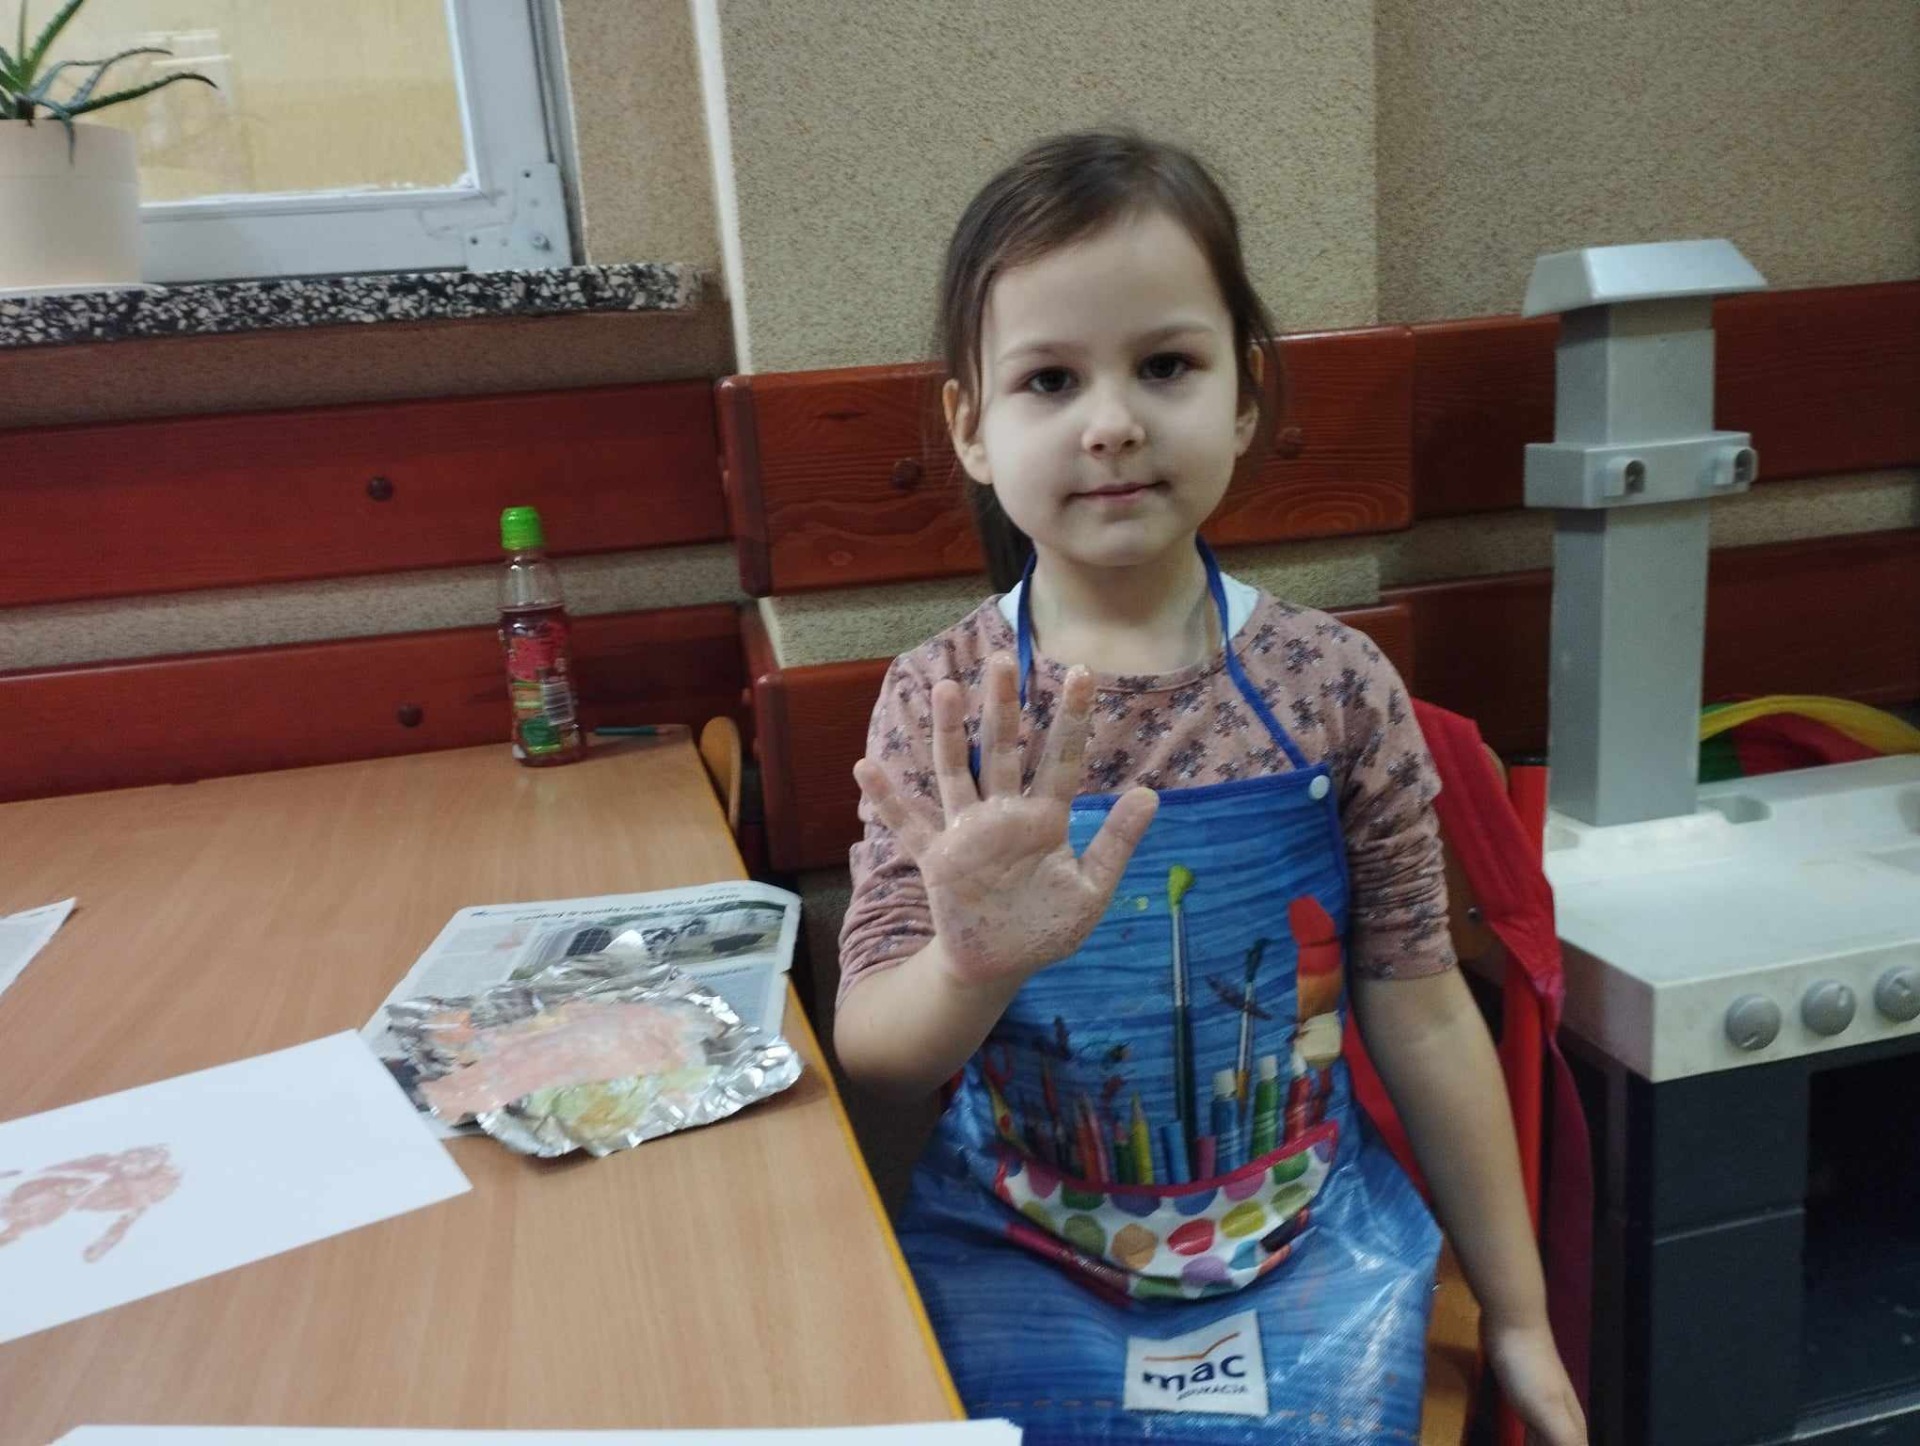 Przedszkolaki wykonują zadania z projektu "Kosmiczne dłonie" pomalowanymi kolorowo dłońmi.